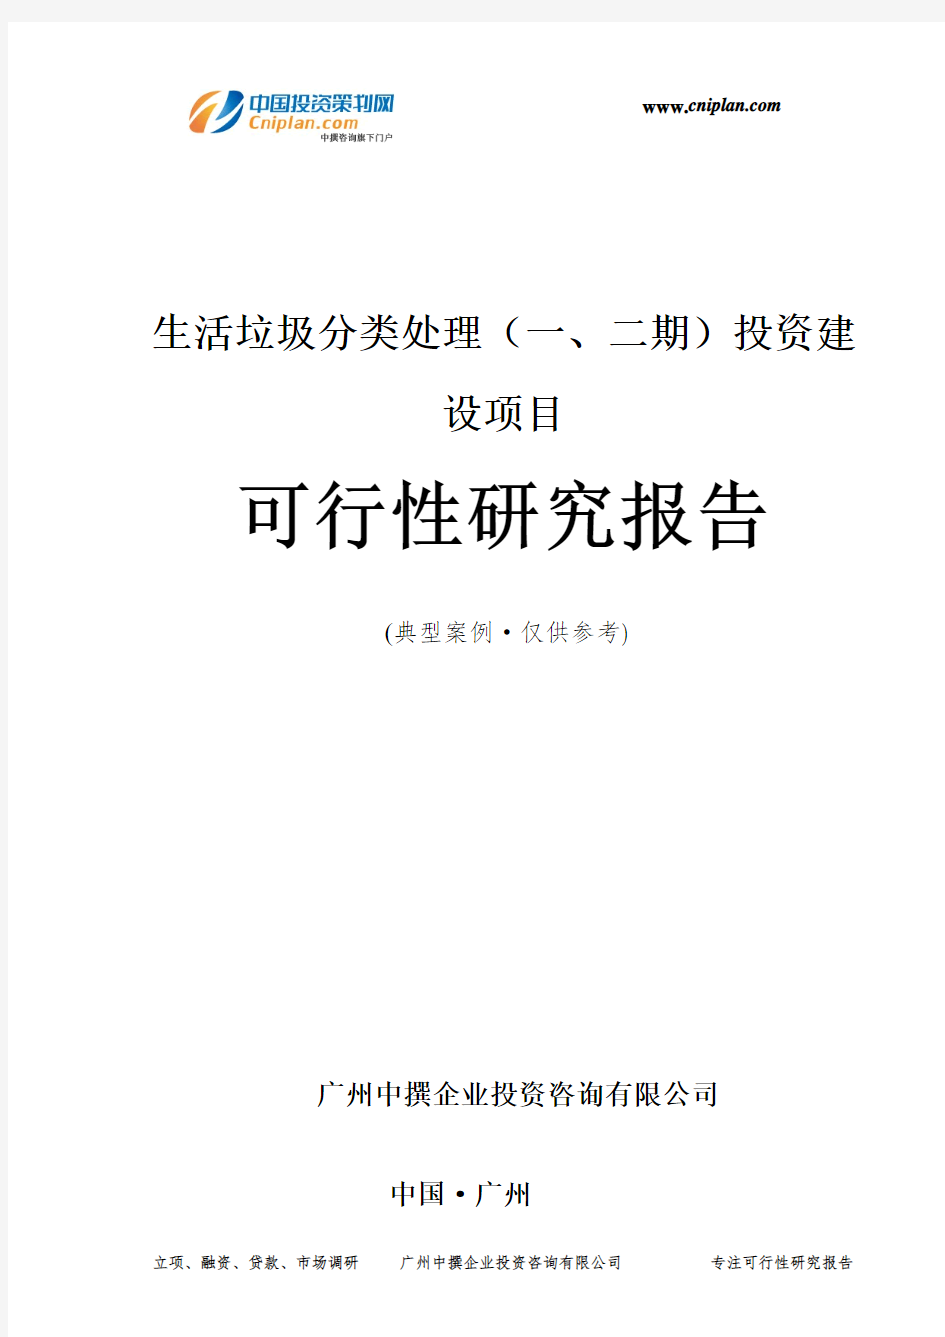 生活垃圾分类处理(一、二期)投资建设项目可行性研究报告-广州中撰咨询